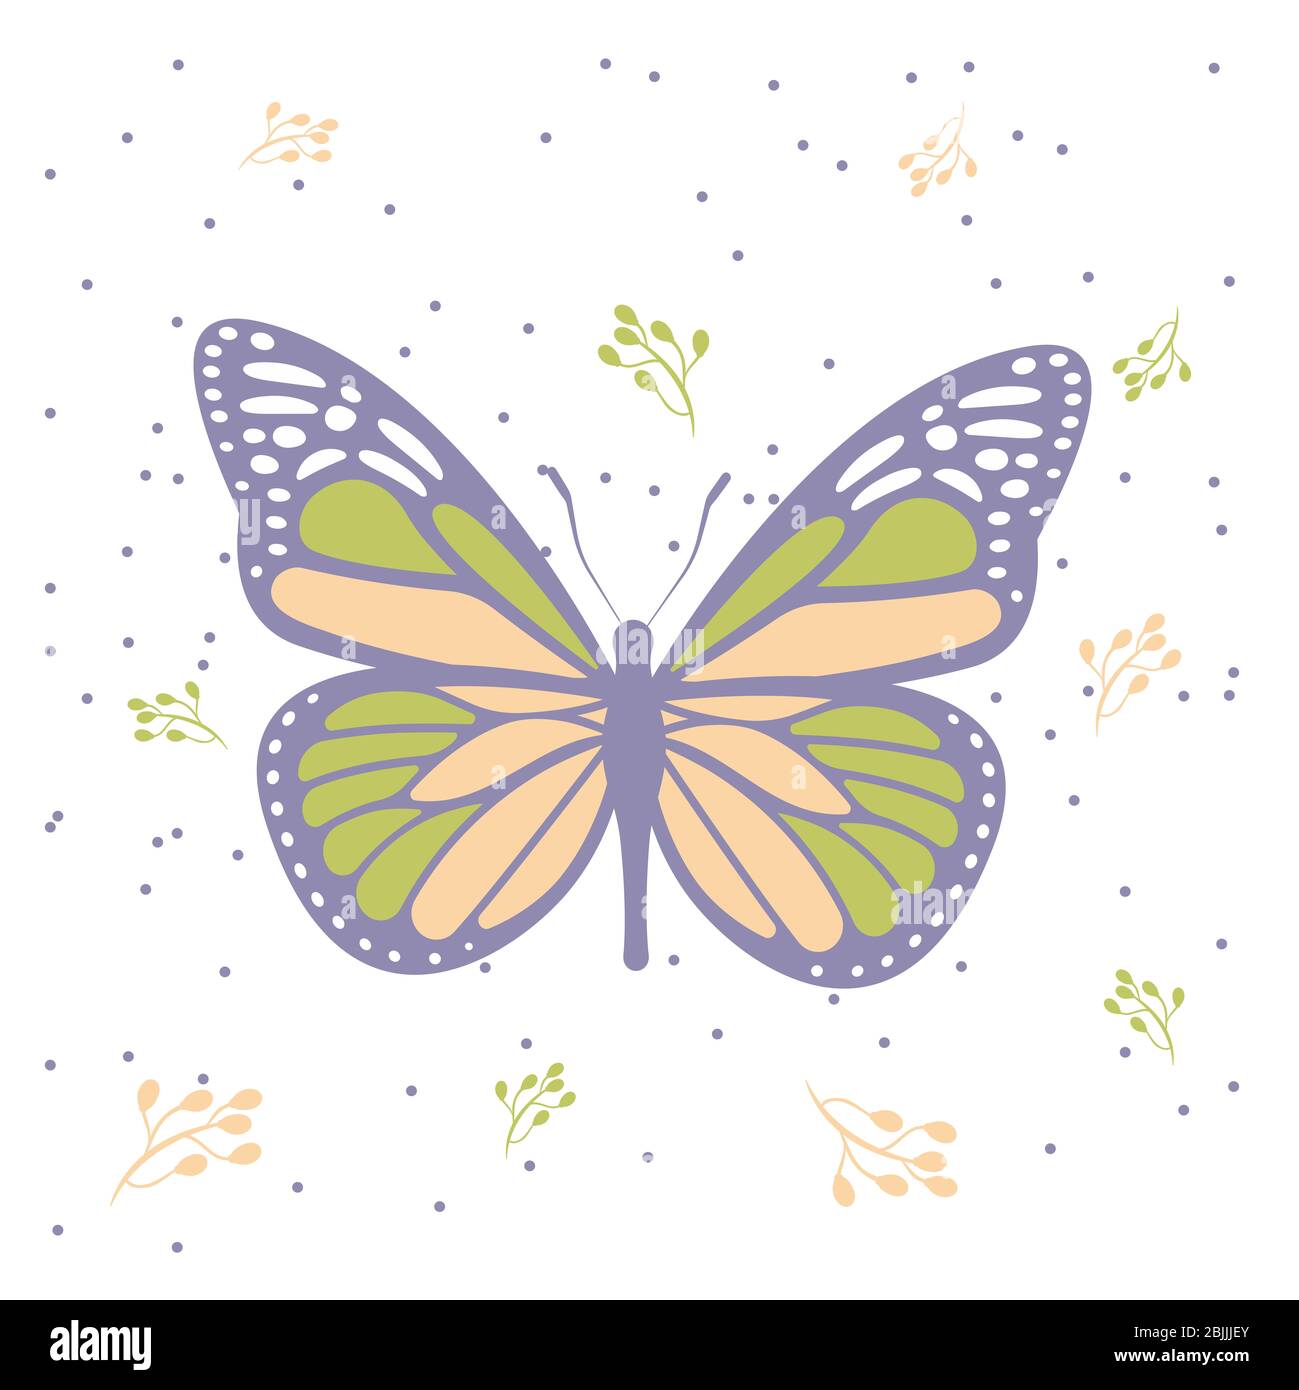 Schmetterling, farbige Blätter und Punkte, nahtlose Muster oder Vorlage, isoliert auf weiß,., Illustrationen Stockfoto